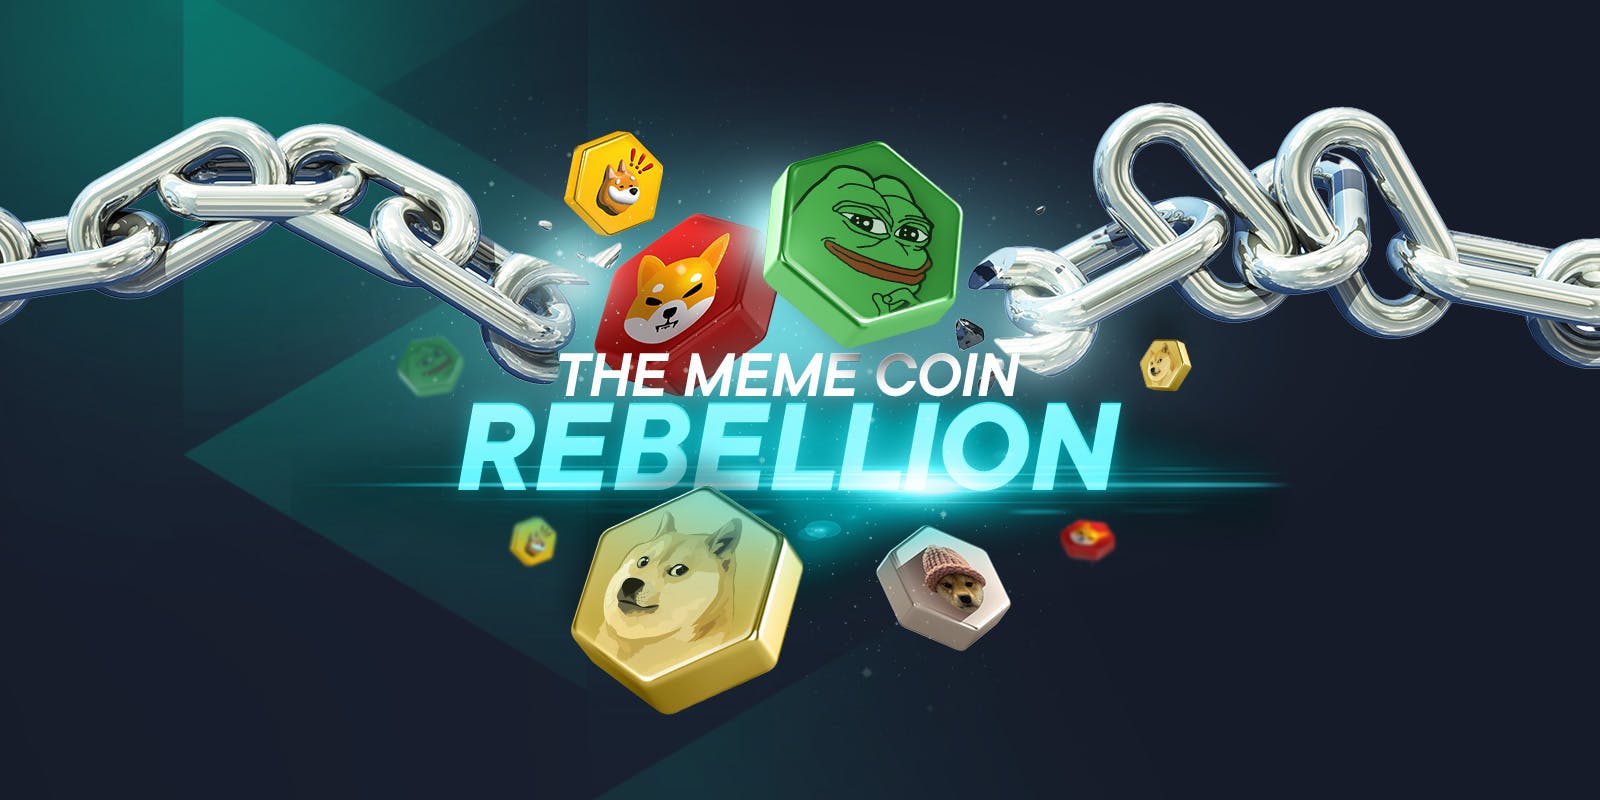 Meme coin rebellion